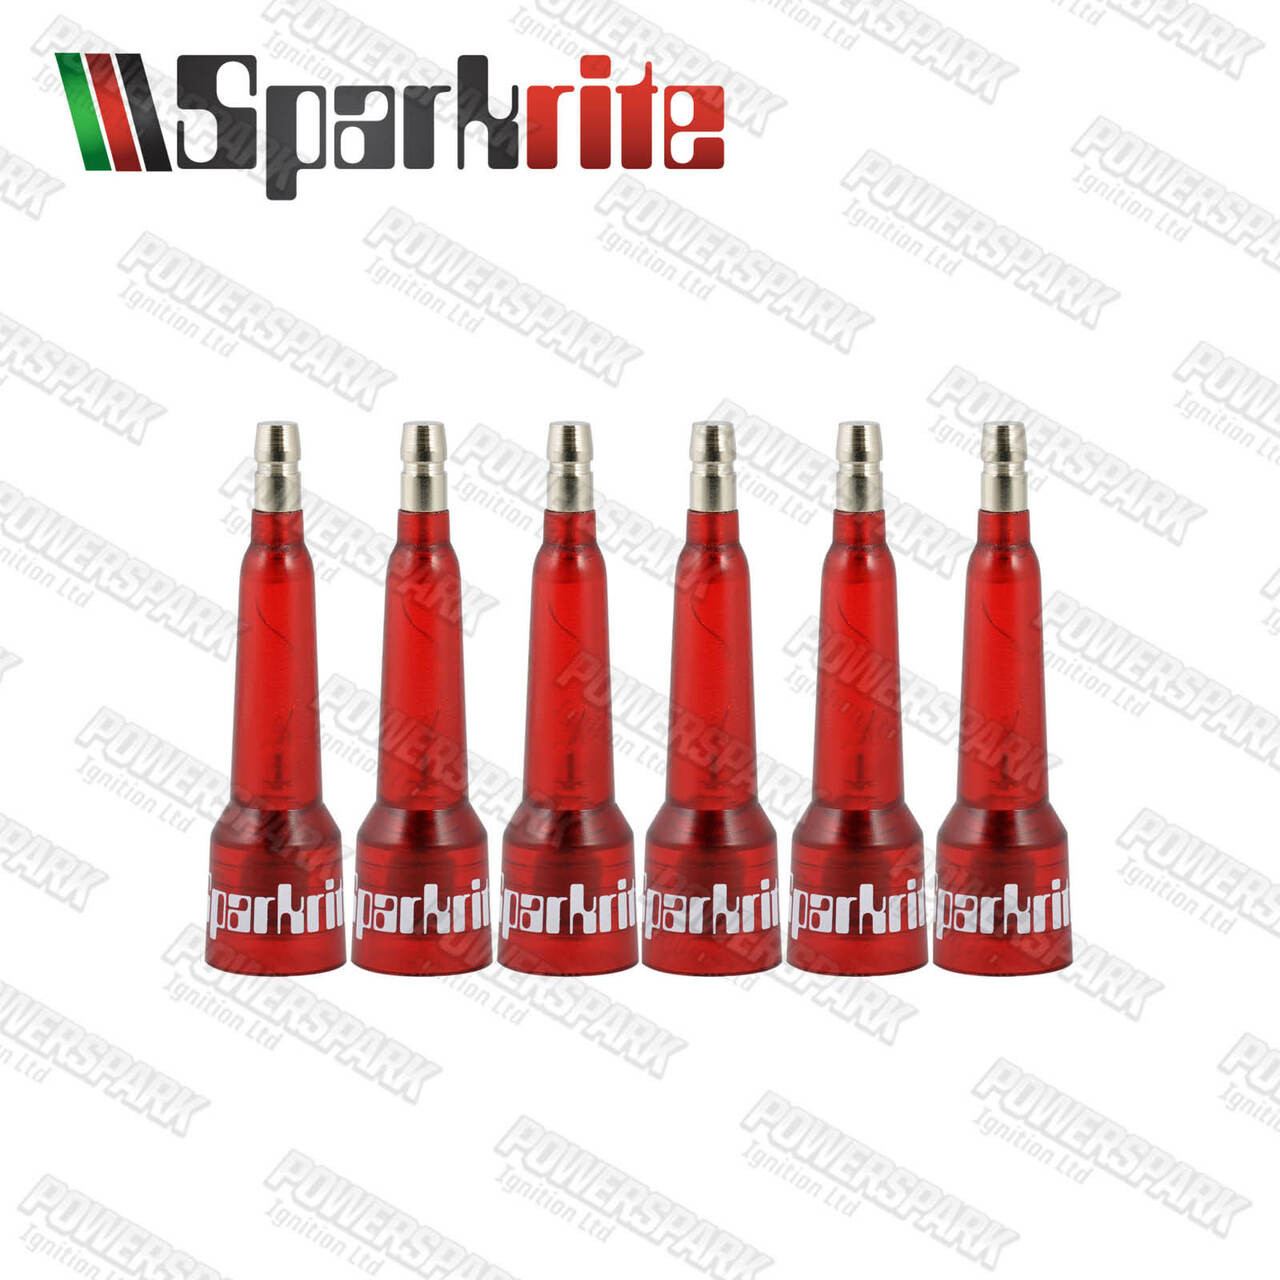 Sparkrite Sparkrite Spark Plug Tester Set of 6